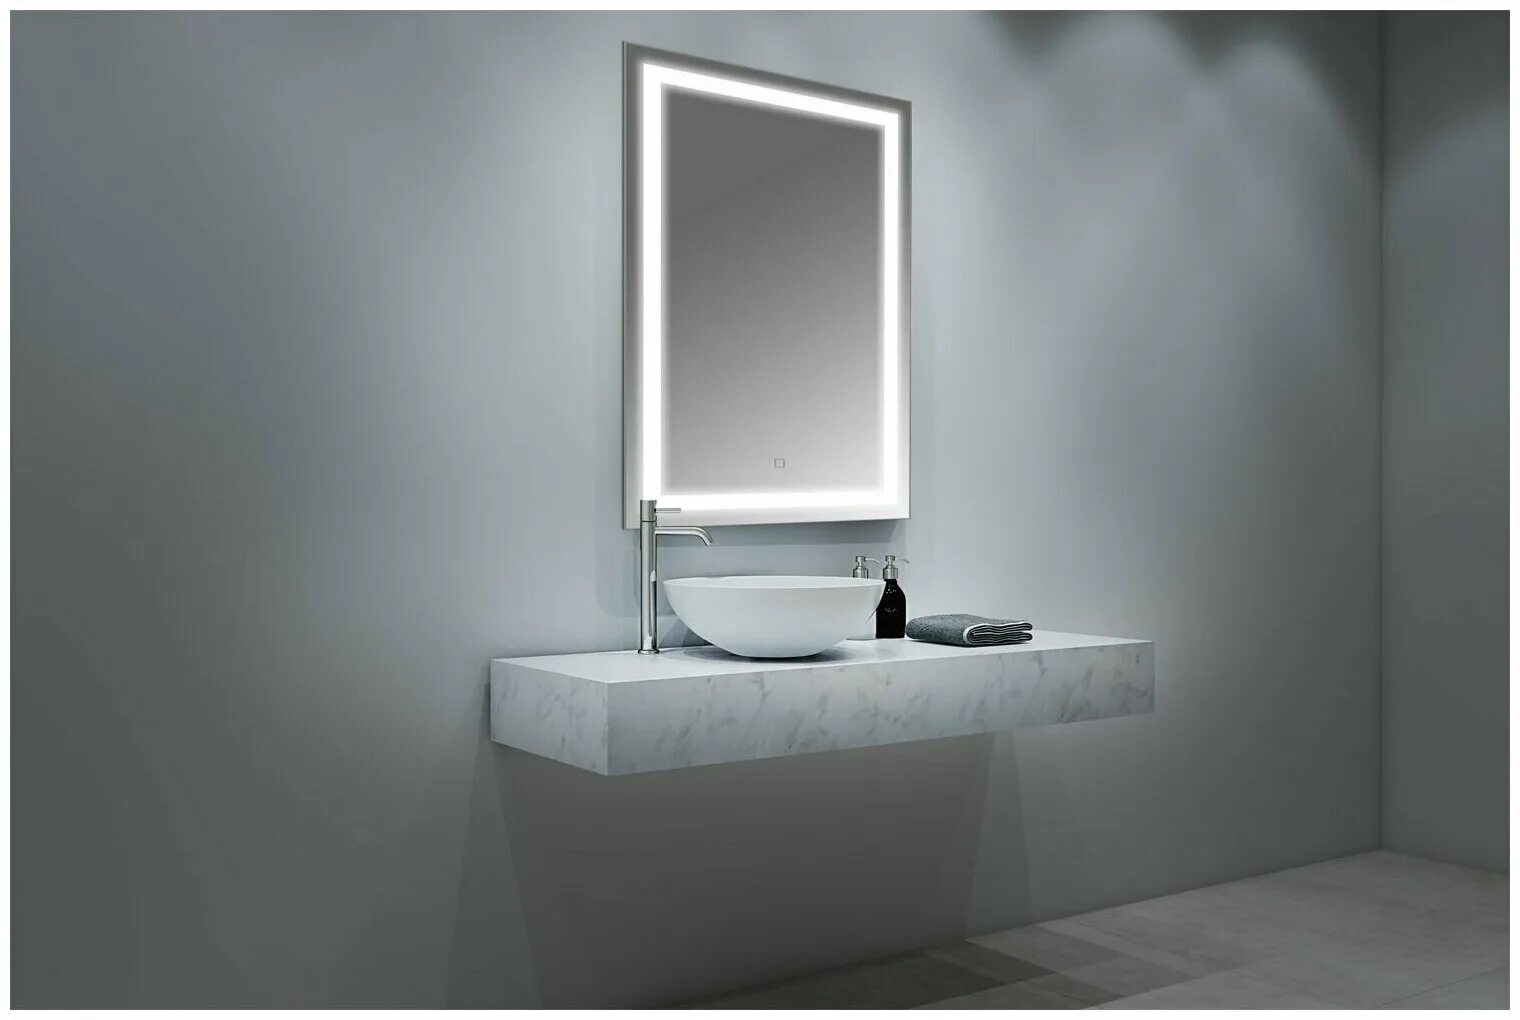 Прямоугольное зеркало для ванны